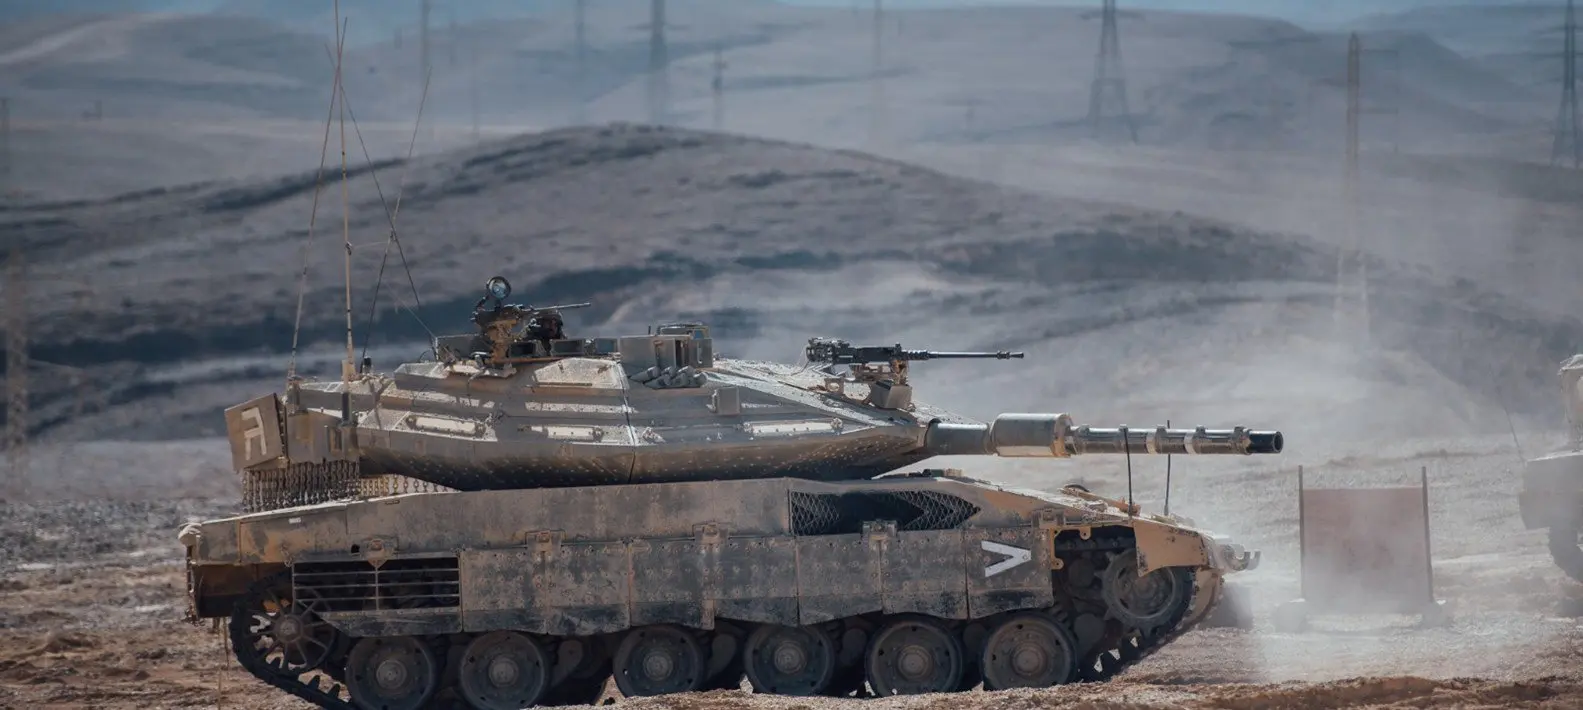 Βόρειο Ισραήλ: Καταιγισμός βολών από άρματα μάχης Merkava κατά οχυρής θέσης της Χεζμπολάχ